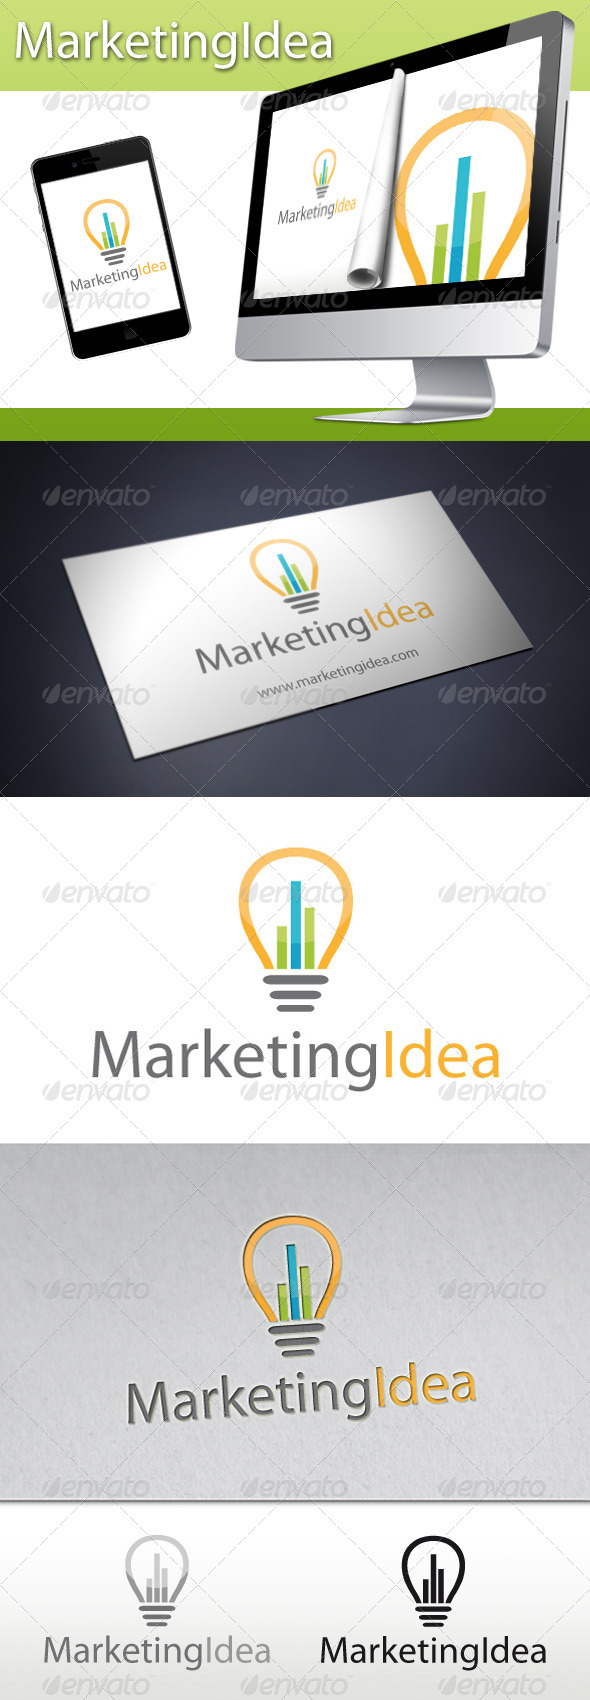 Marketing Idea Logo